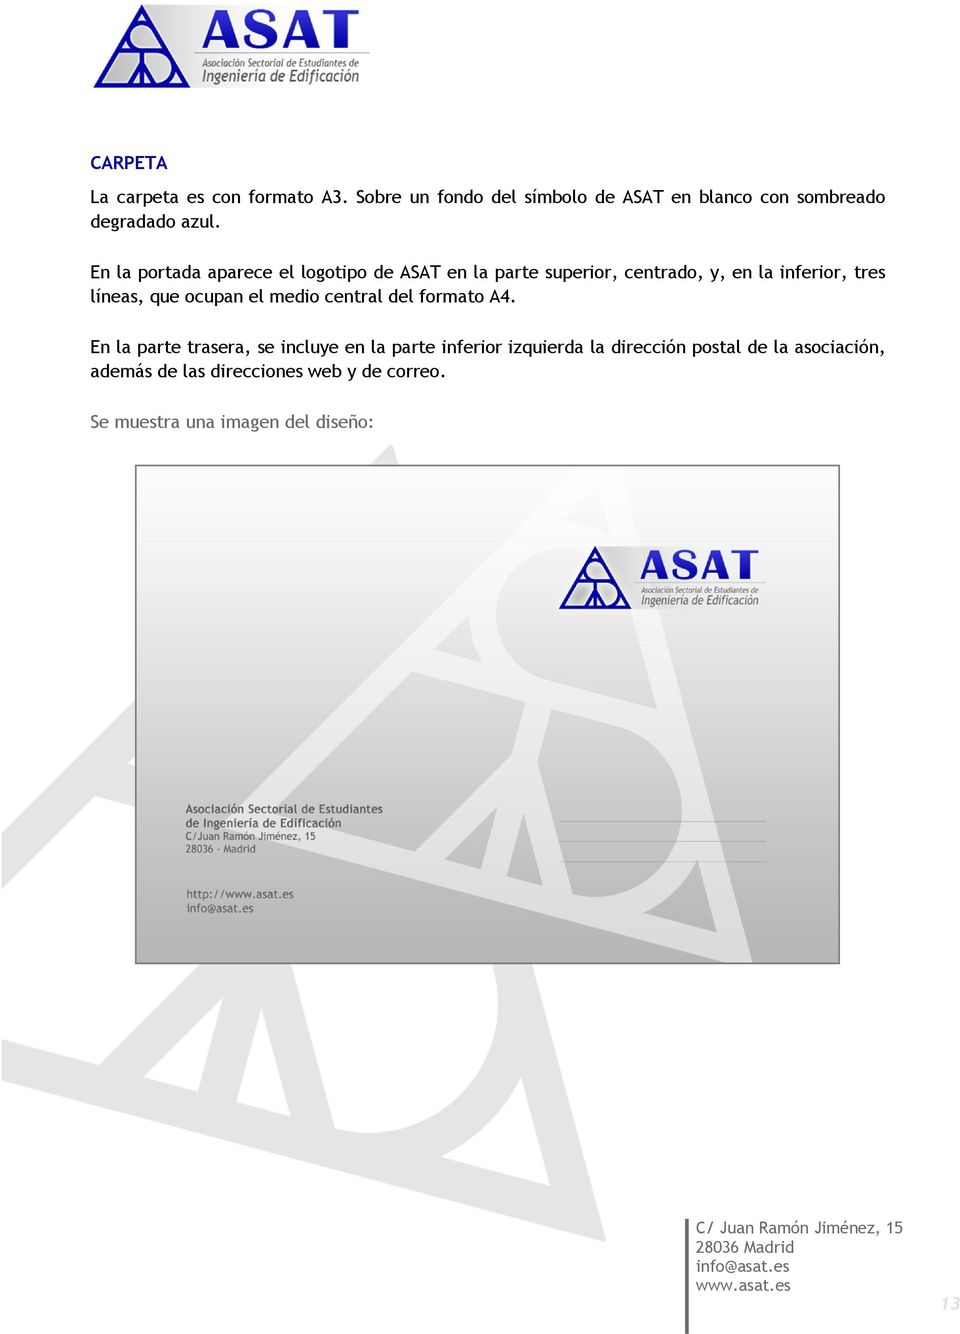 En la portada aparece el logotipo de ASAT en la parte superior, centrado, y, en la inferior, tres líneas, que